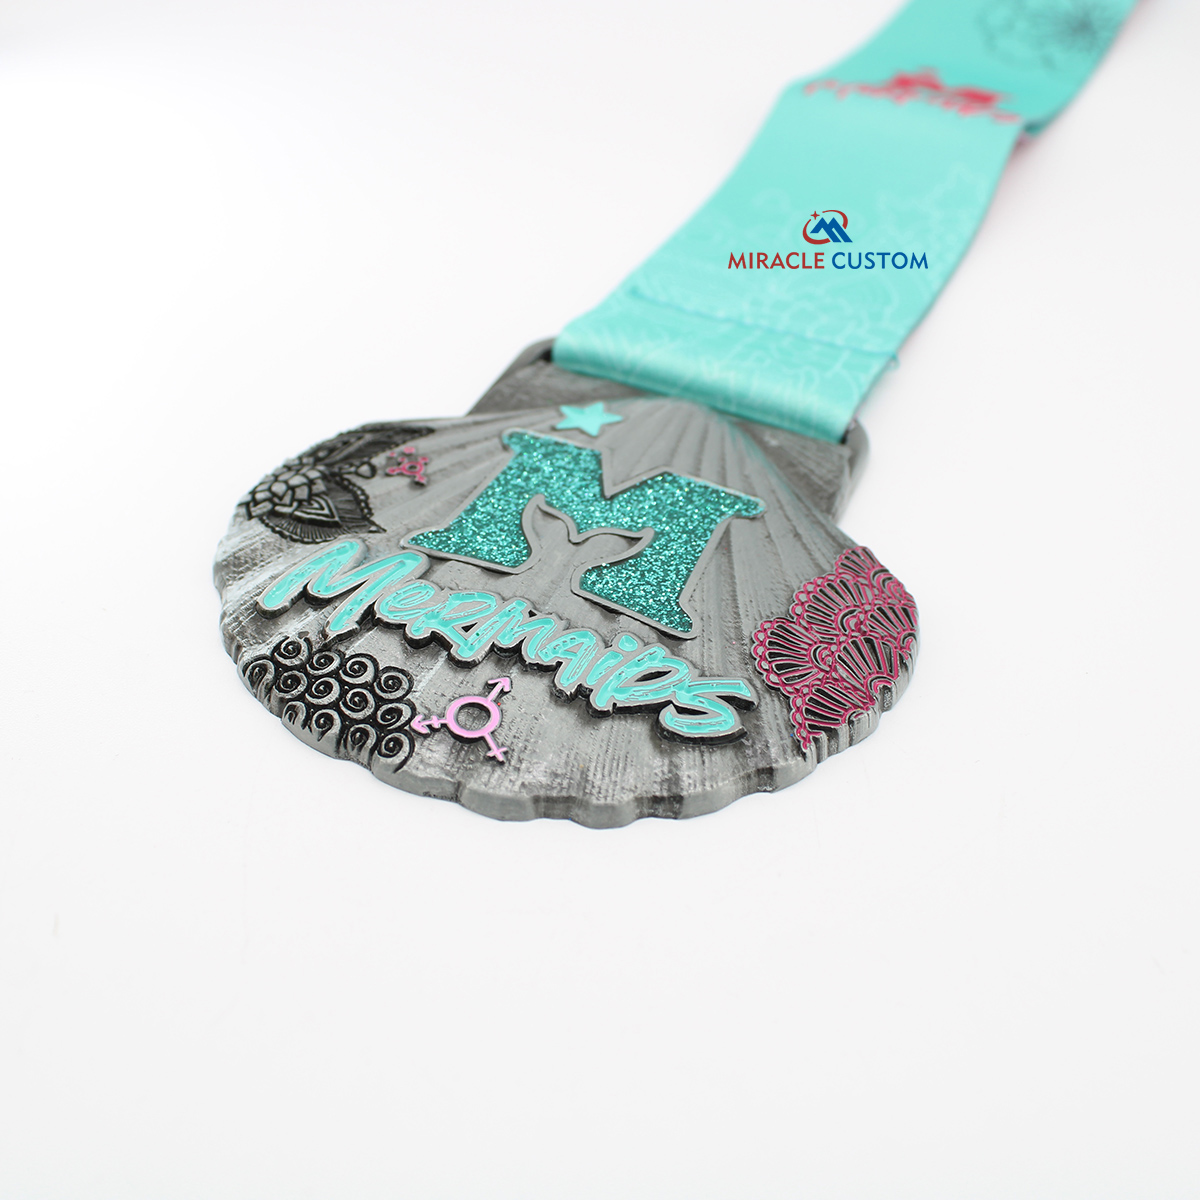 Custom Mermaid Run Glitter Sports Medals